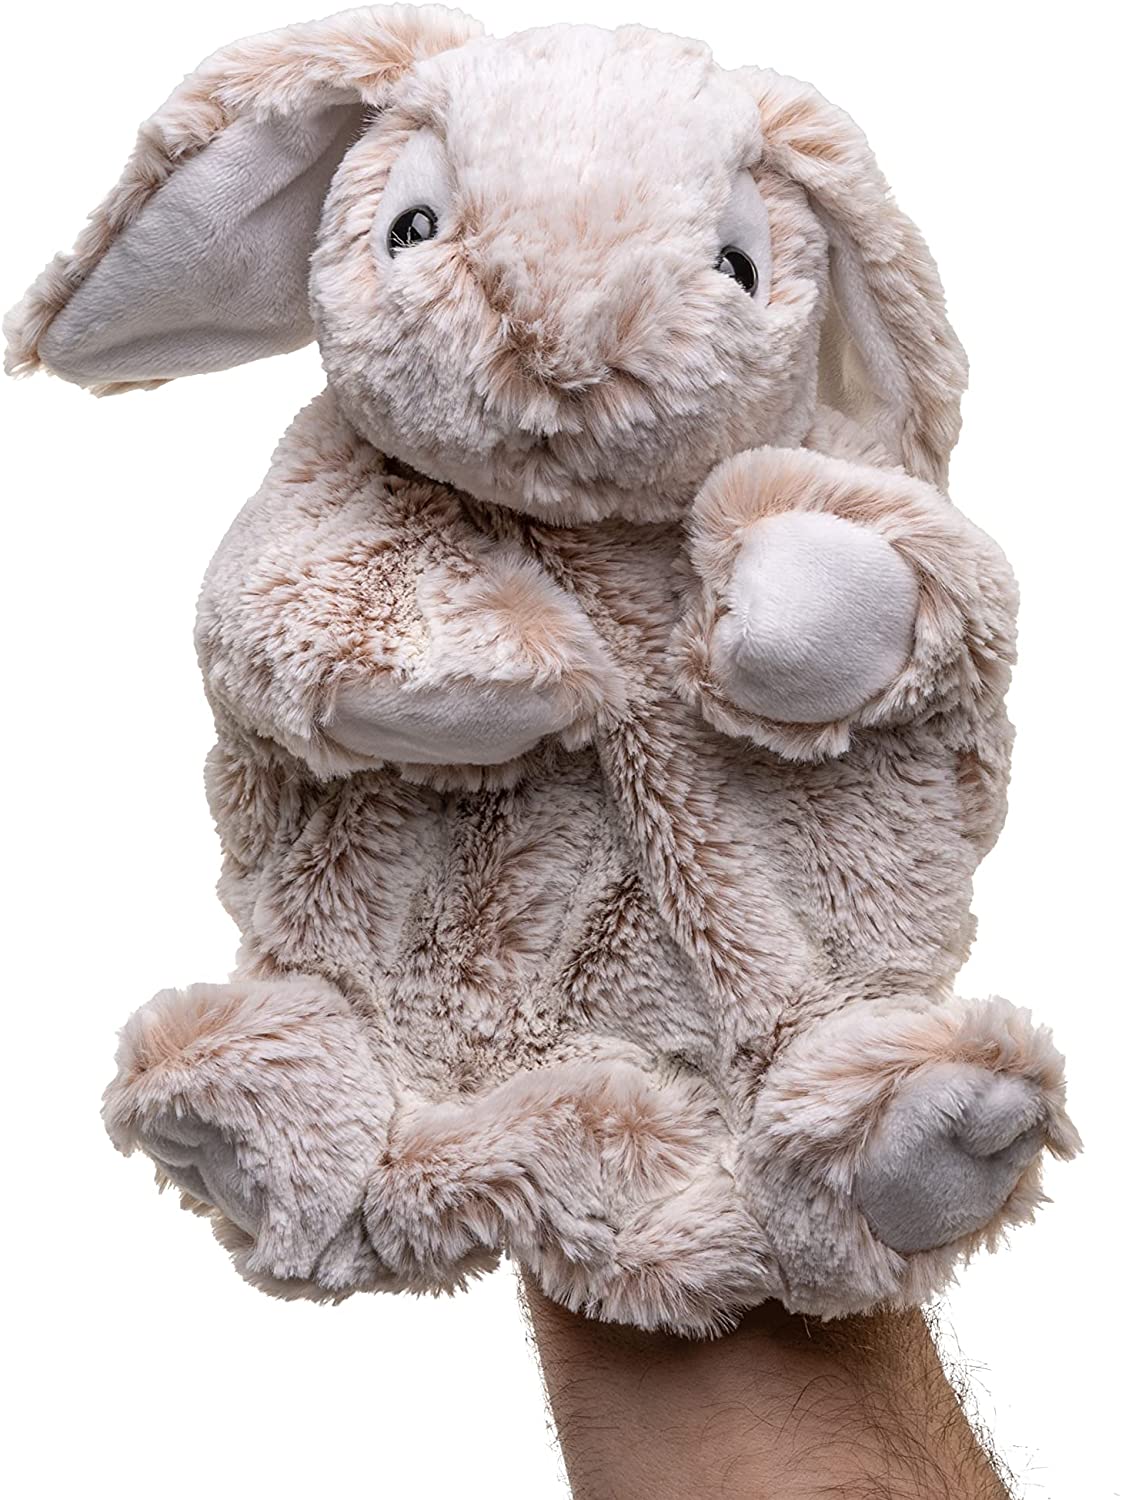 Uni-Toys - Handpuppe Hase - 24 cm (Höhe) - Plüsch-Kaninchen - Plüschtier, Kuscheltier 